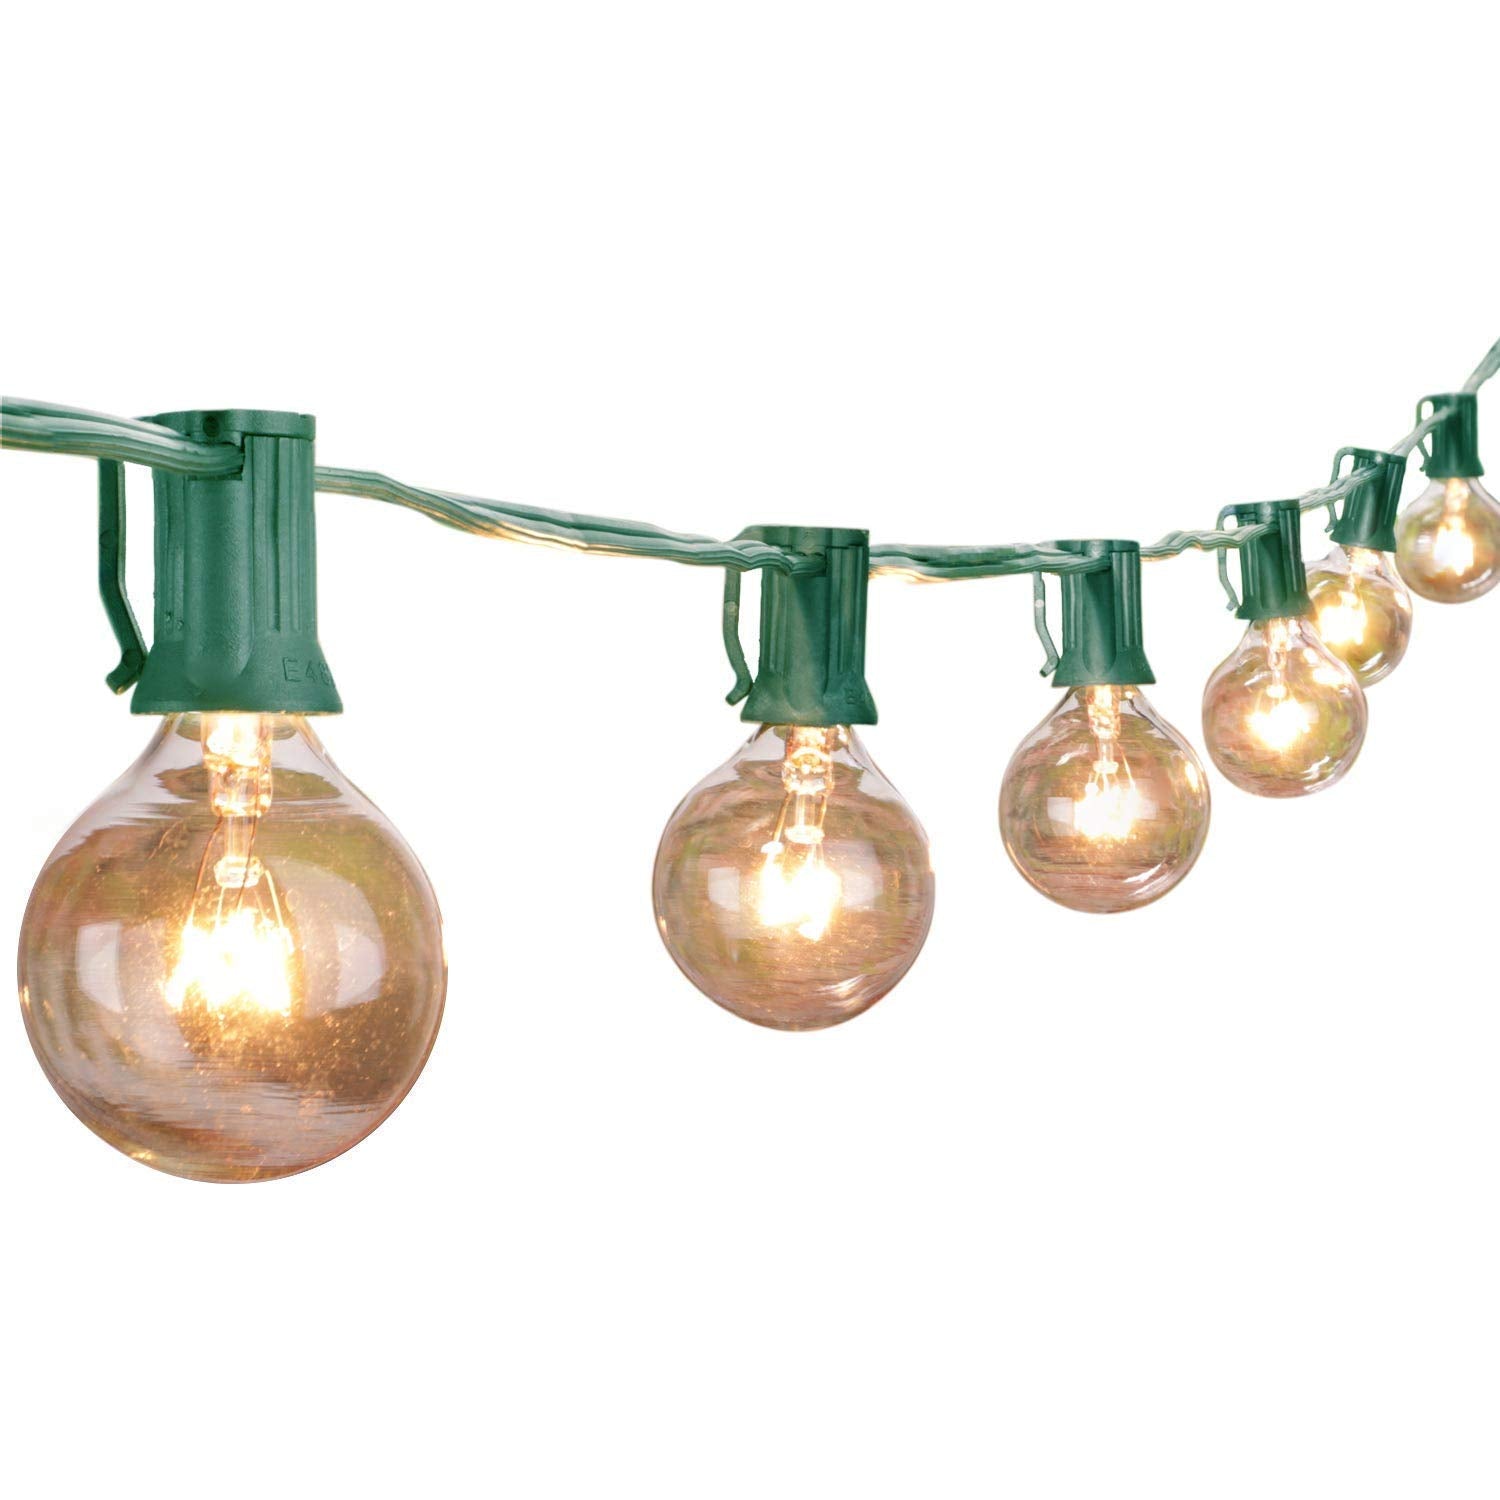 100 Feet / 100 Bulbs ( 4 spare ) / Green Wire